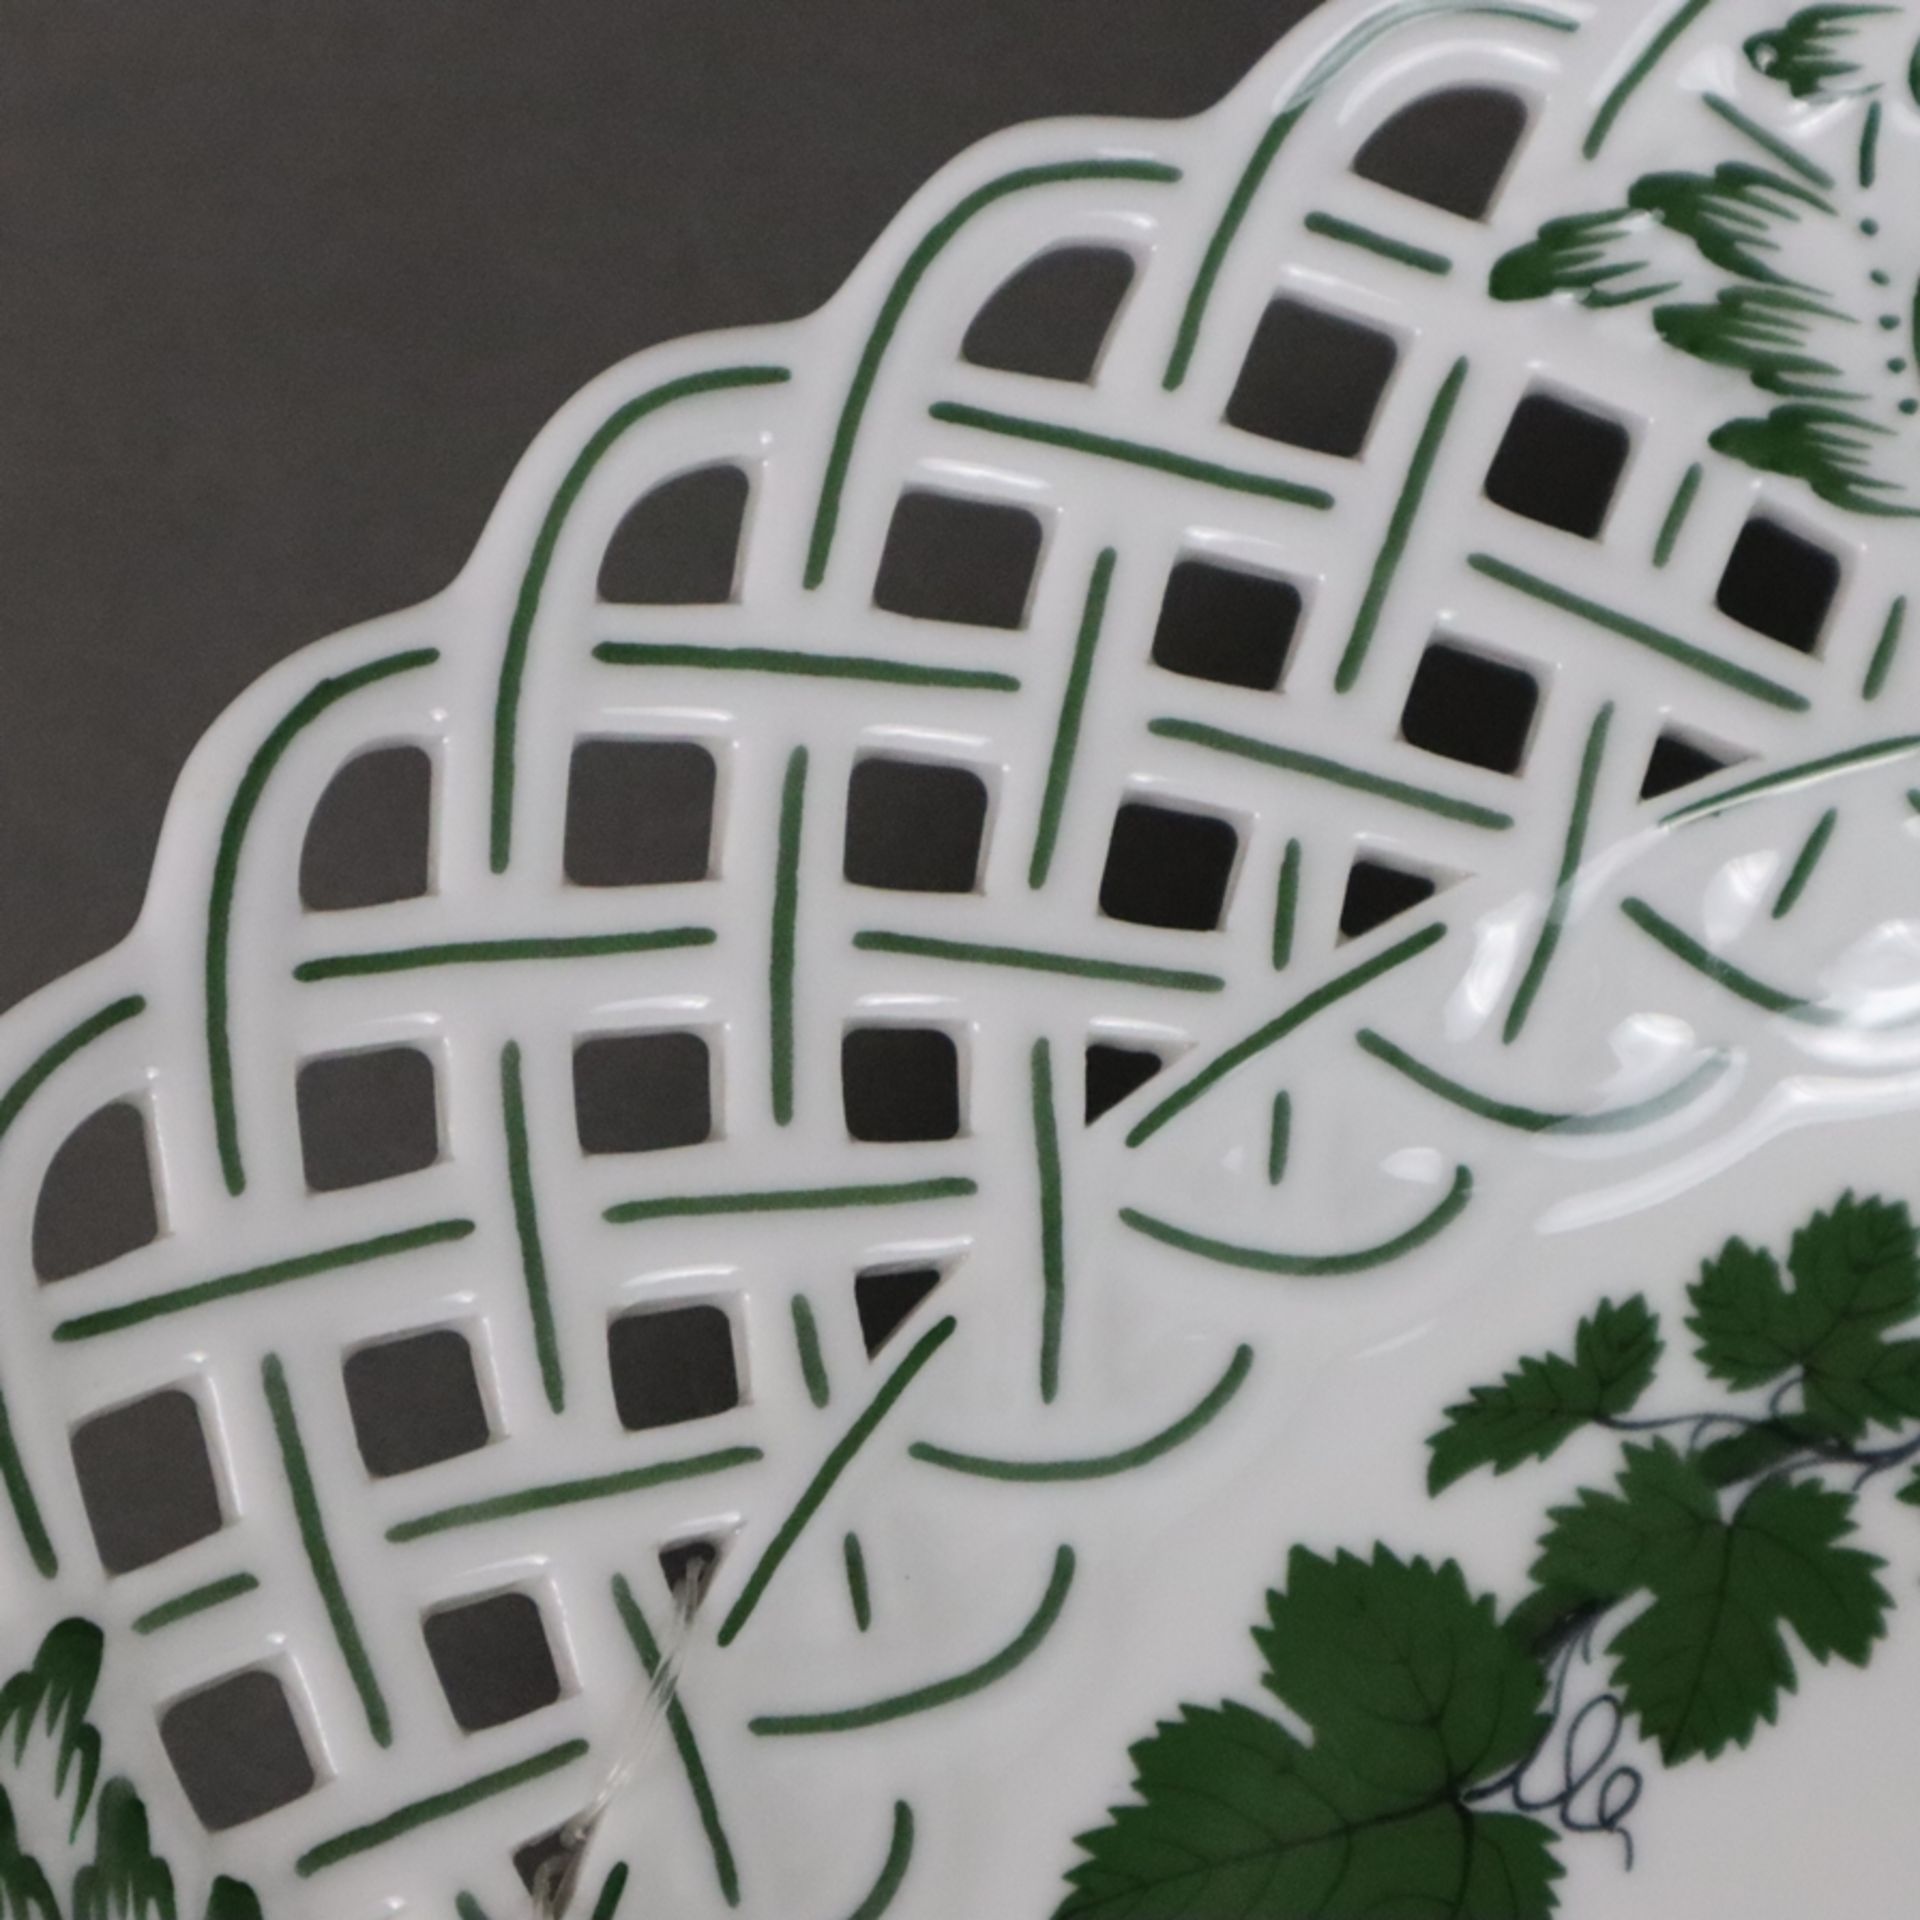 Zierteller - Meissen, Porzellan, Weinlaubdekor in Grün und Schwarz, runde Form mit durchbrochen gea - Image 4 of 5